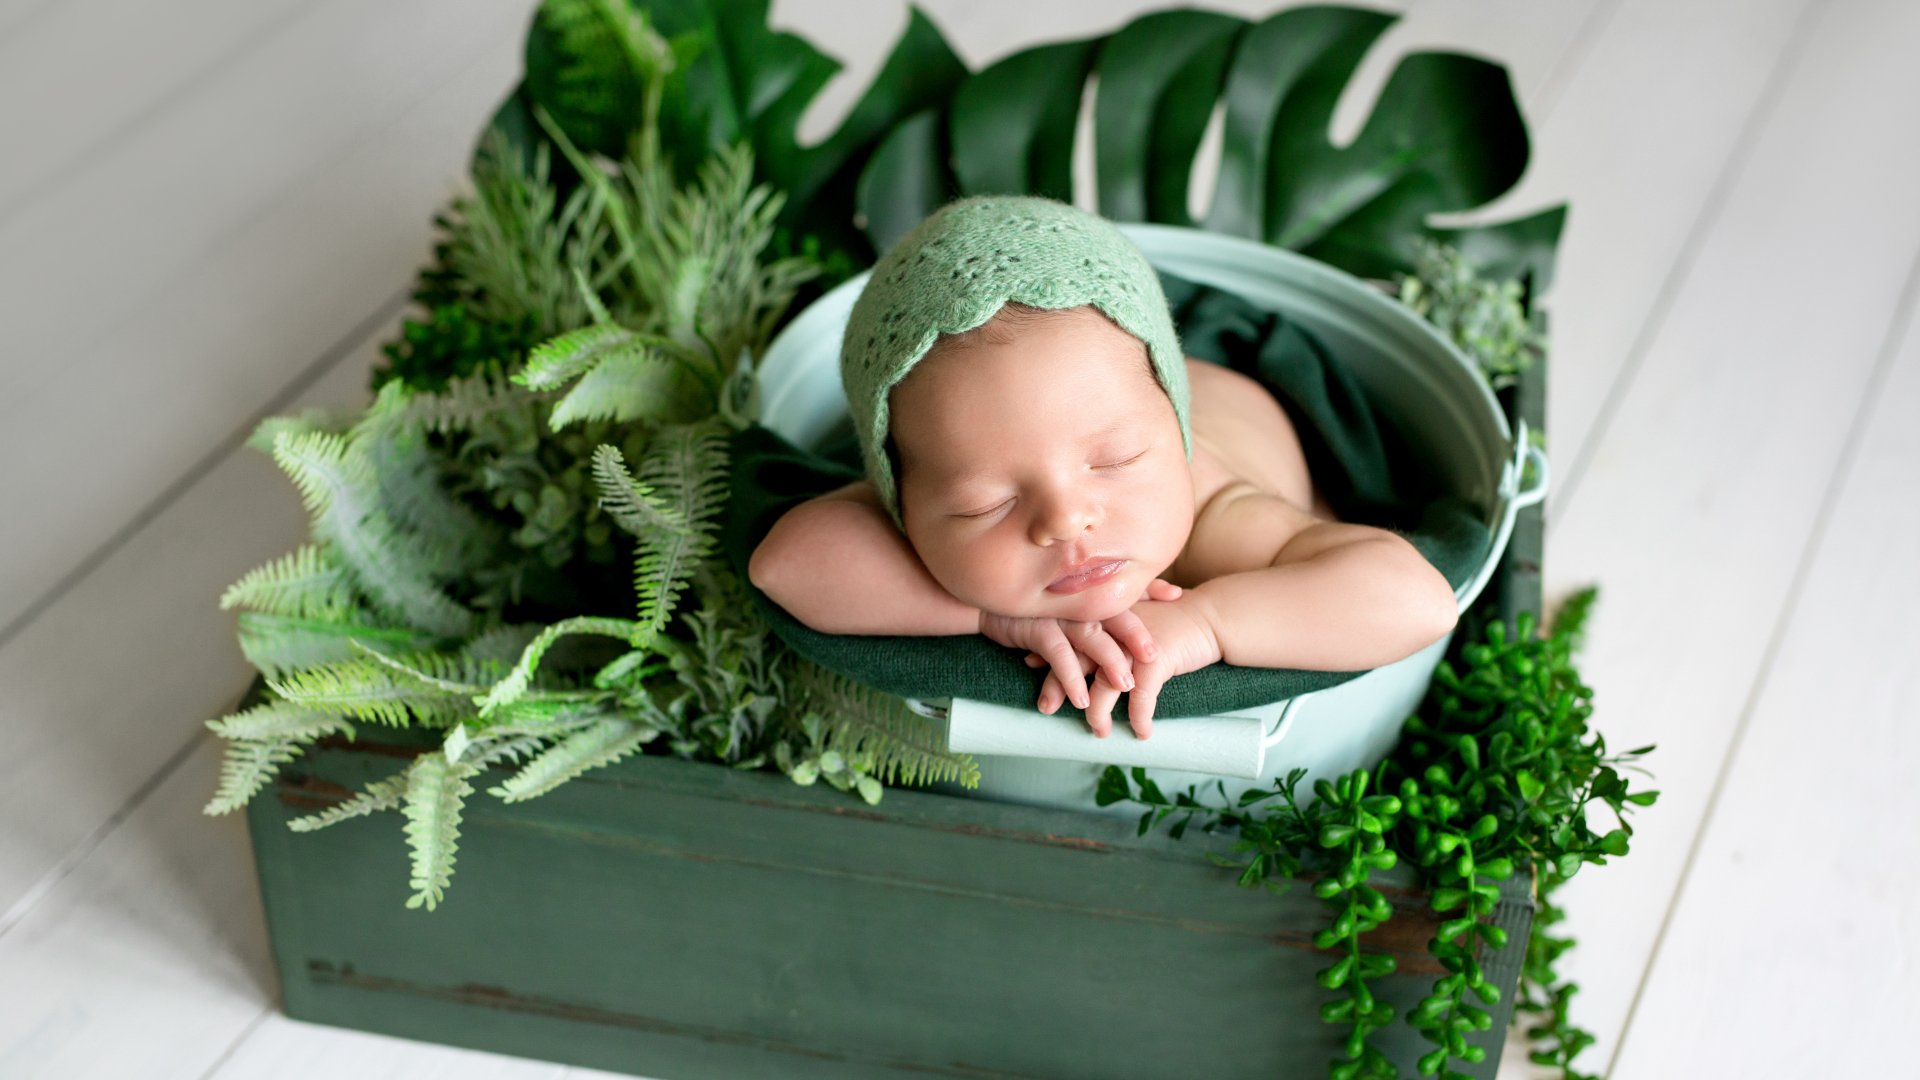 Dorm en verd: les millors 4 plantes per al dormitori que milloraran el teu descans i el teu benestar